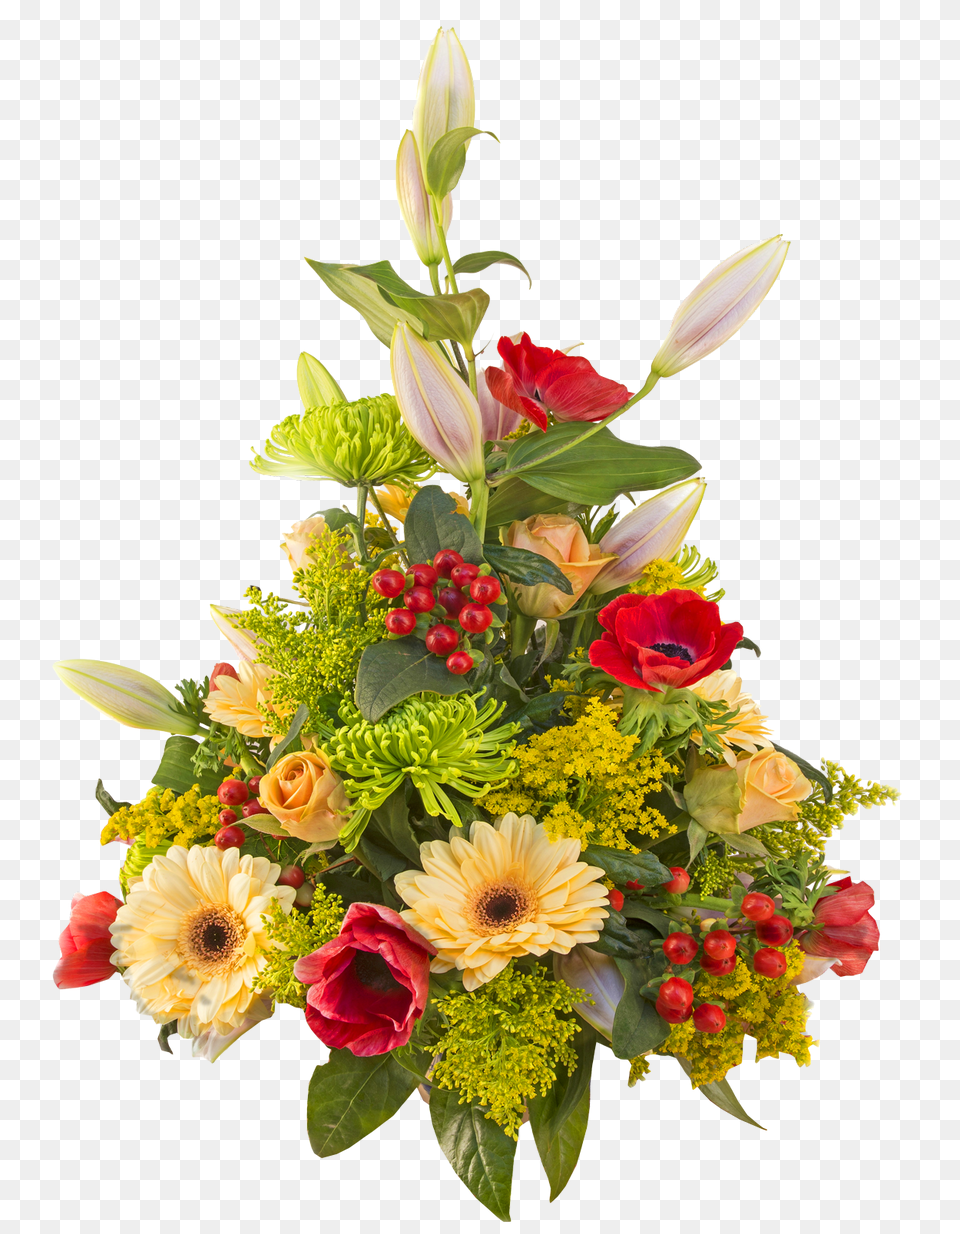 Rose Bouquet For Download Flower Bouquet Hd, Art, Floral Design, Flower Arrangement, Flower Bouquet Free Transparent Png